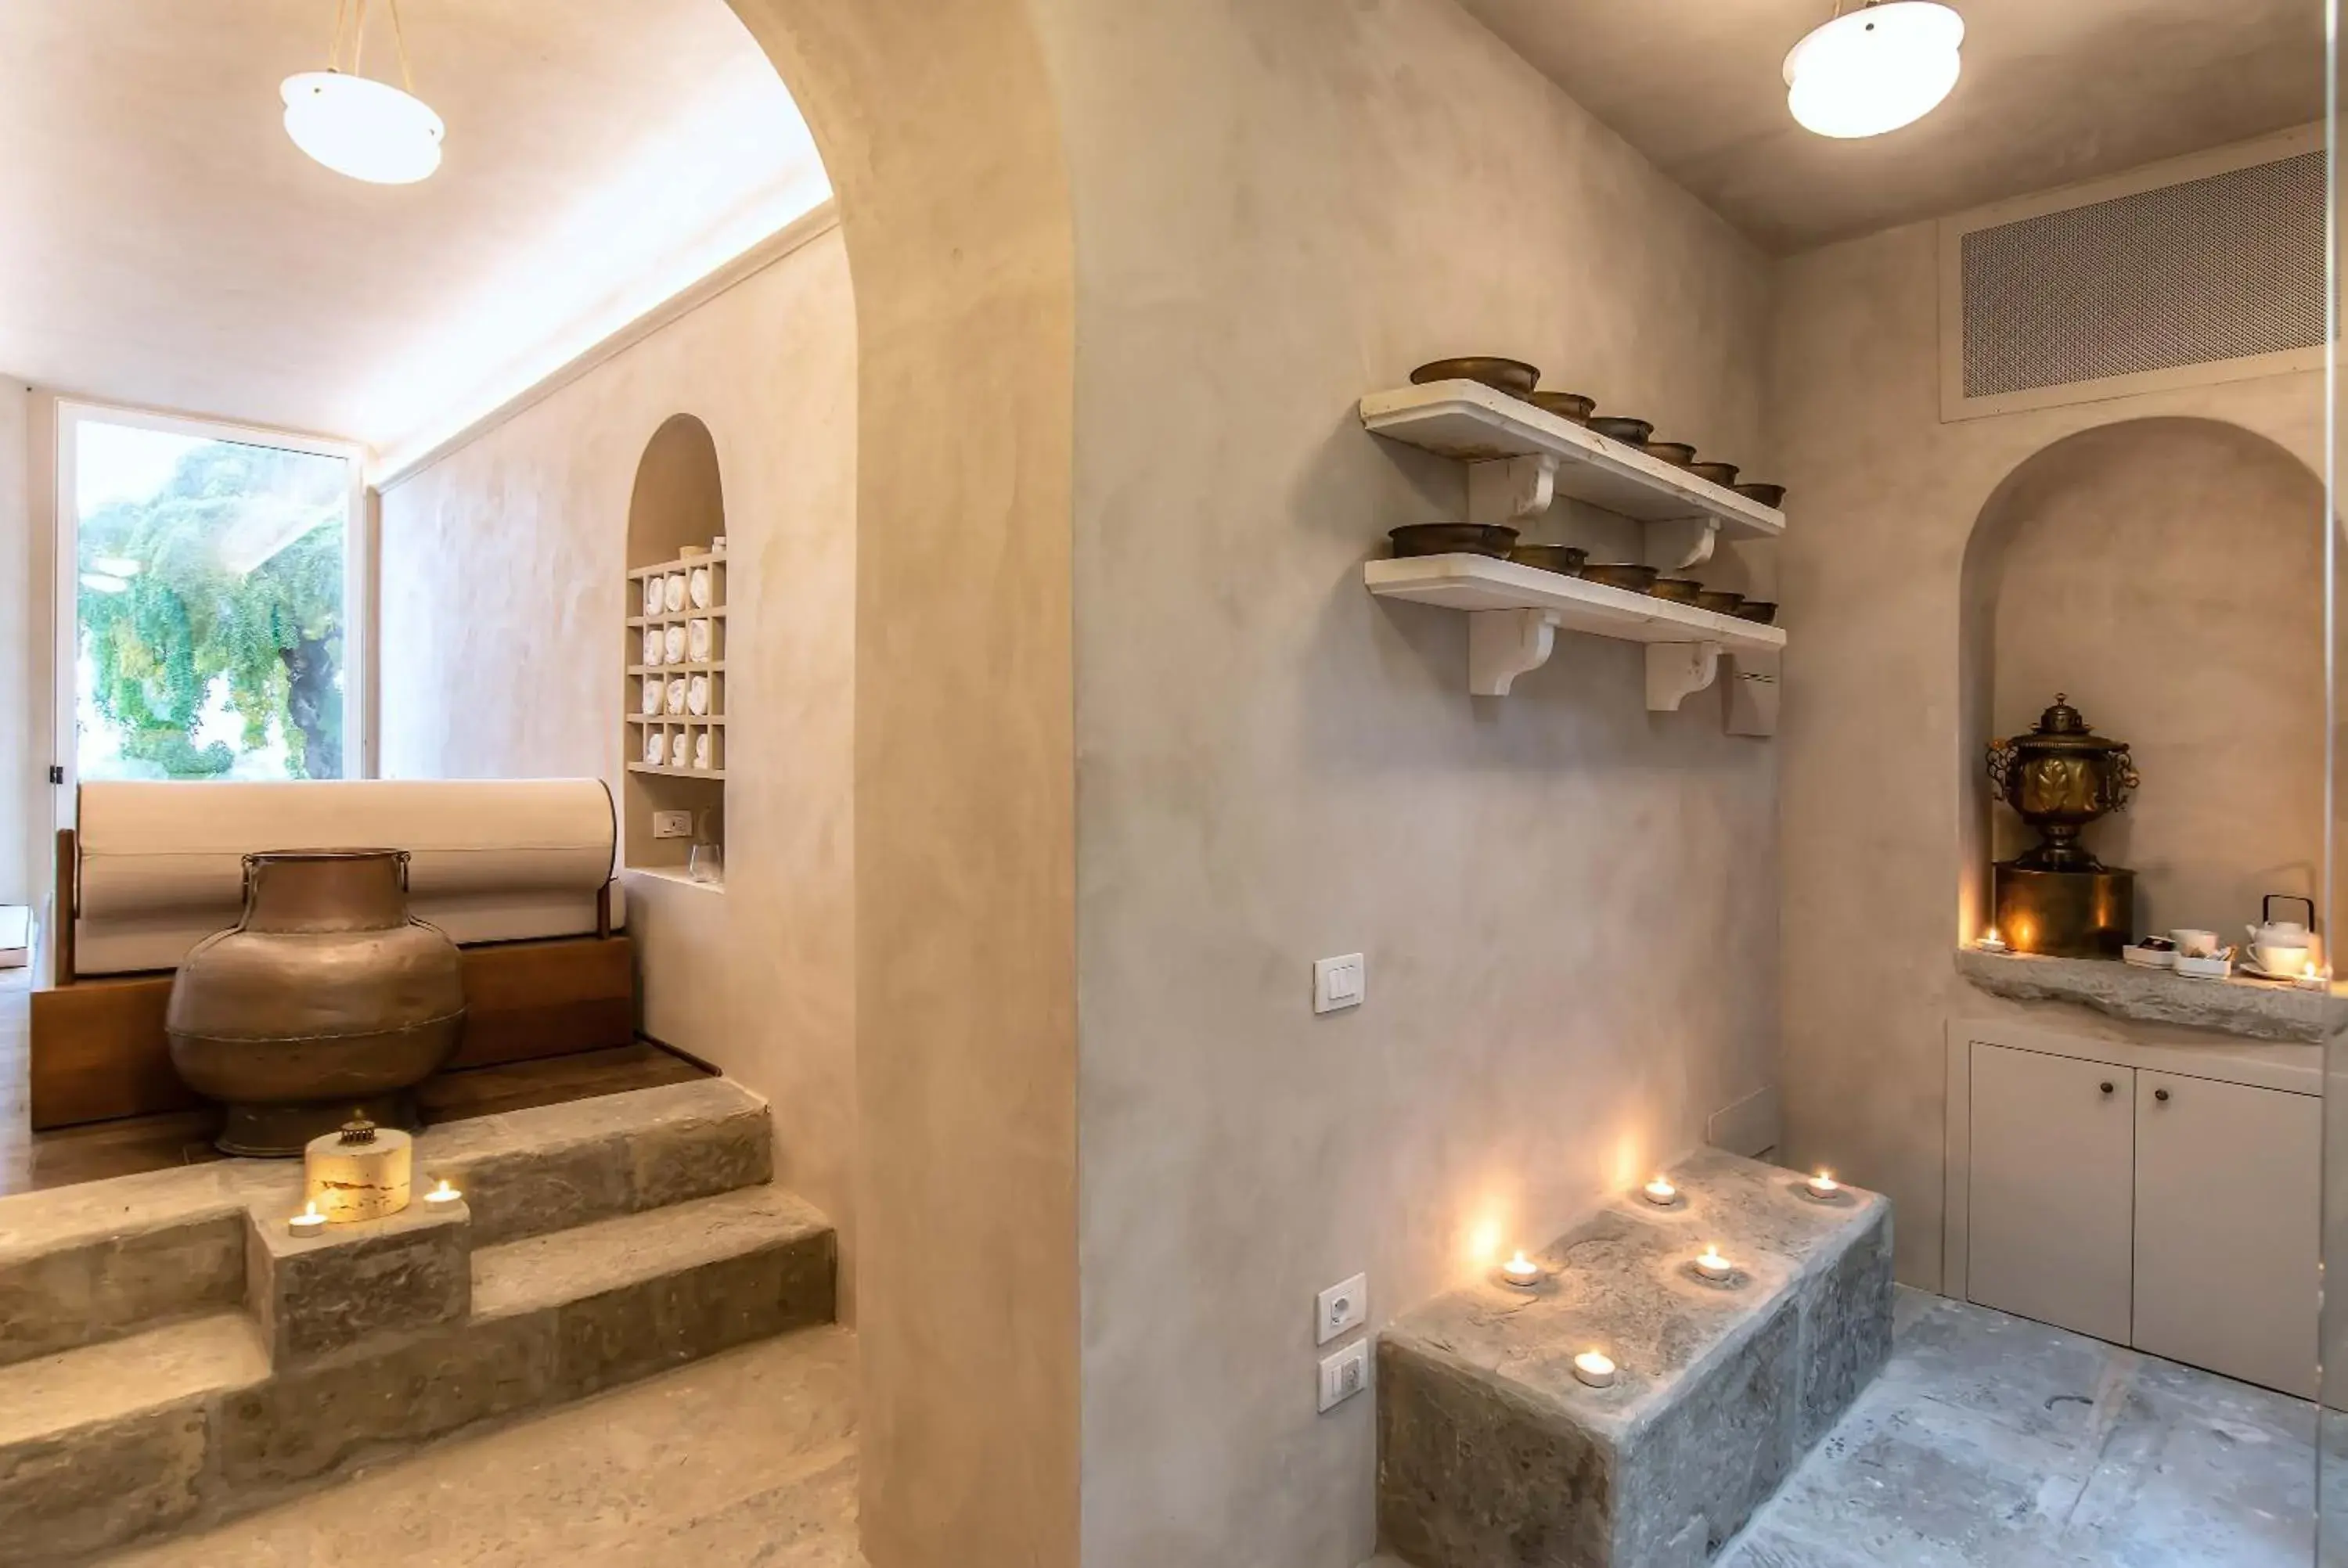 Spa and wellness centre/facilities, Bathroom in Villa Cassia di Baccano